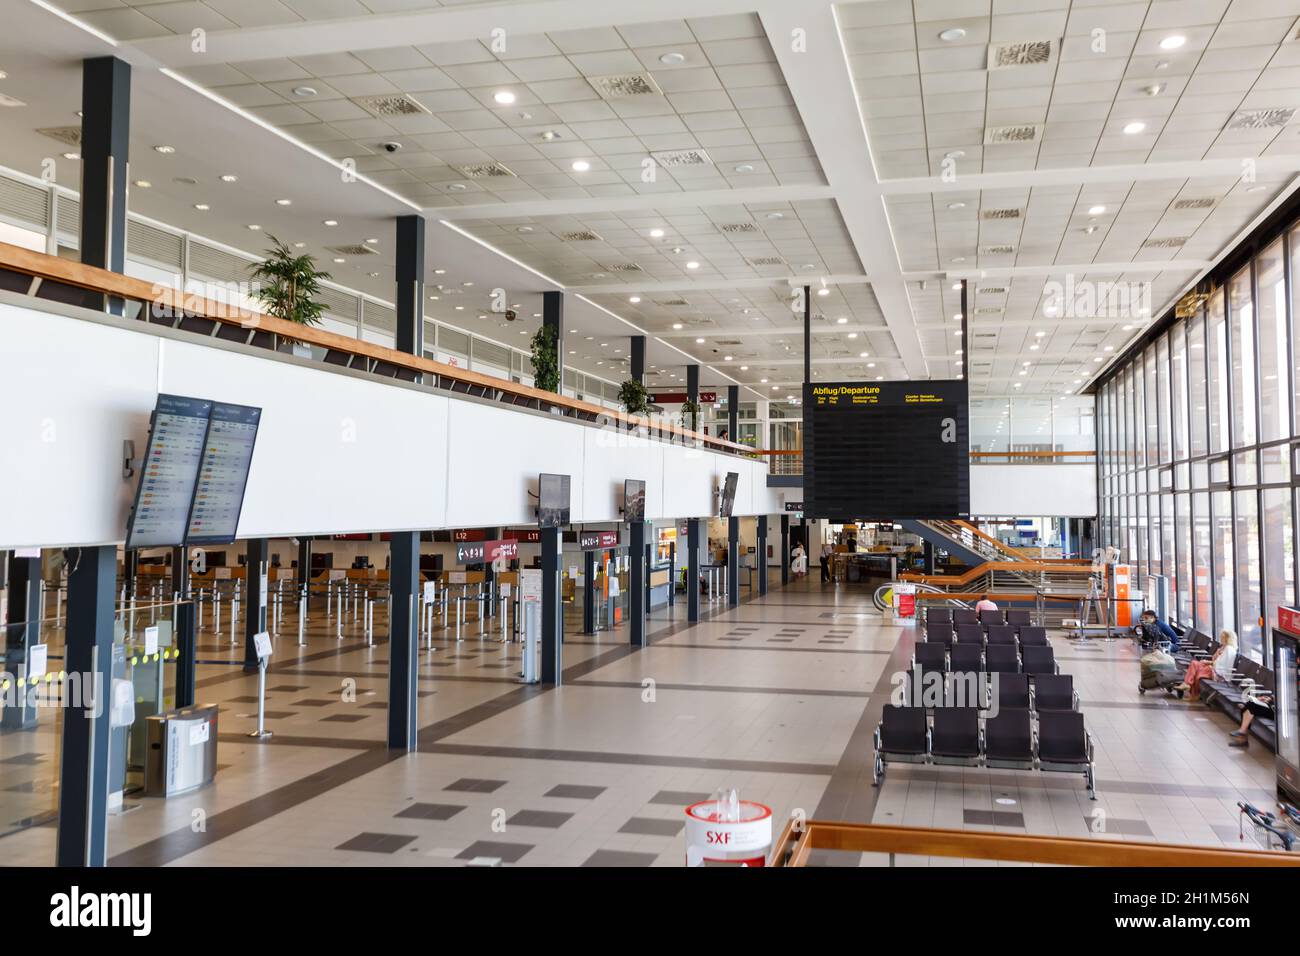 Berlin, Germany - August 20, 2020: Terminal building of Berlin Schönefeld Schonefeld Airport in Germany. Stock Photo